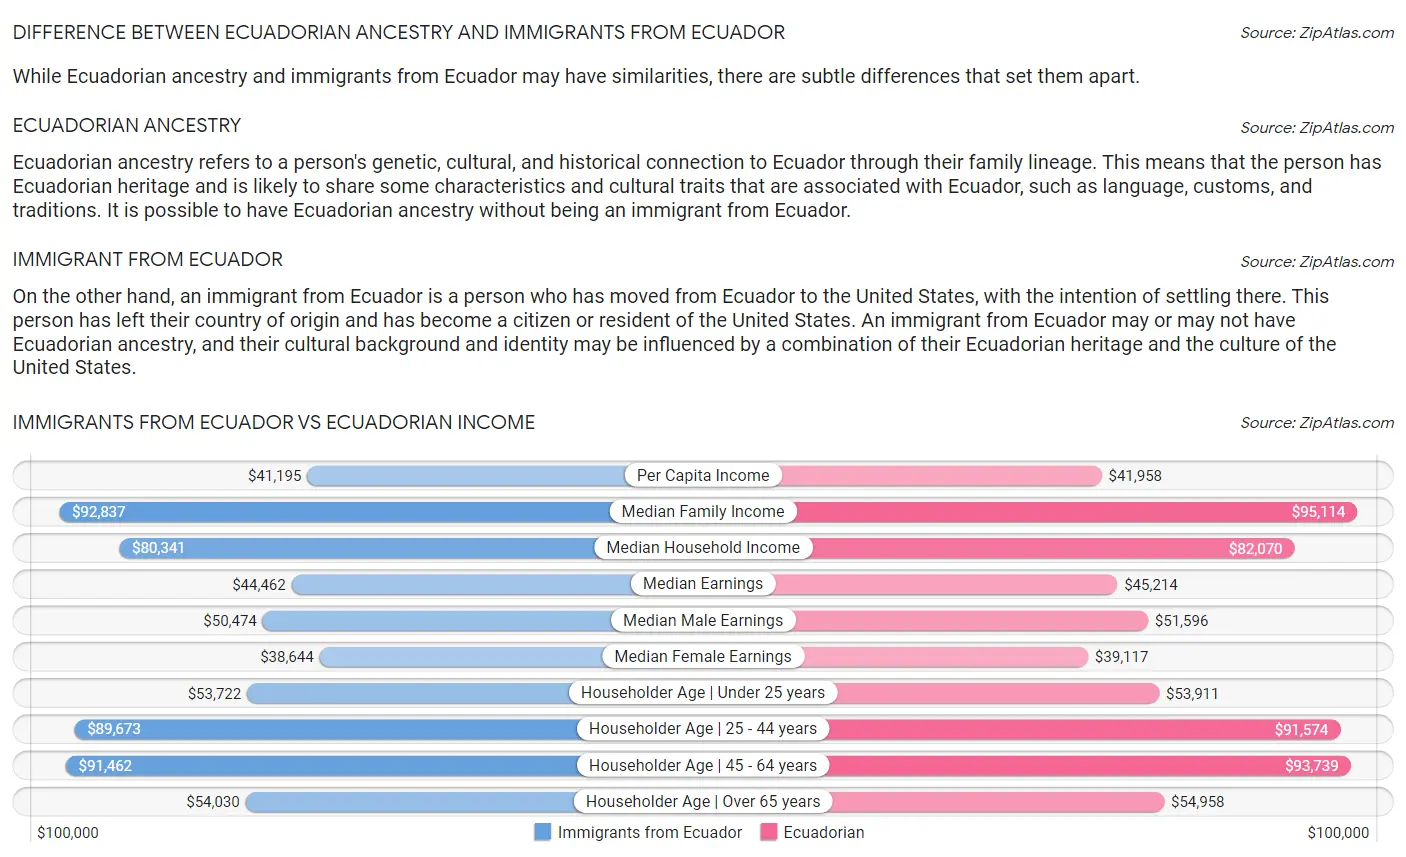 Immigrants from Ecuador vs Ecuadorian Income